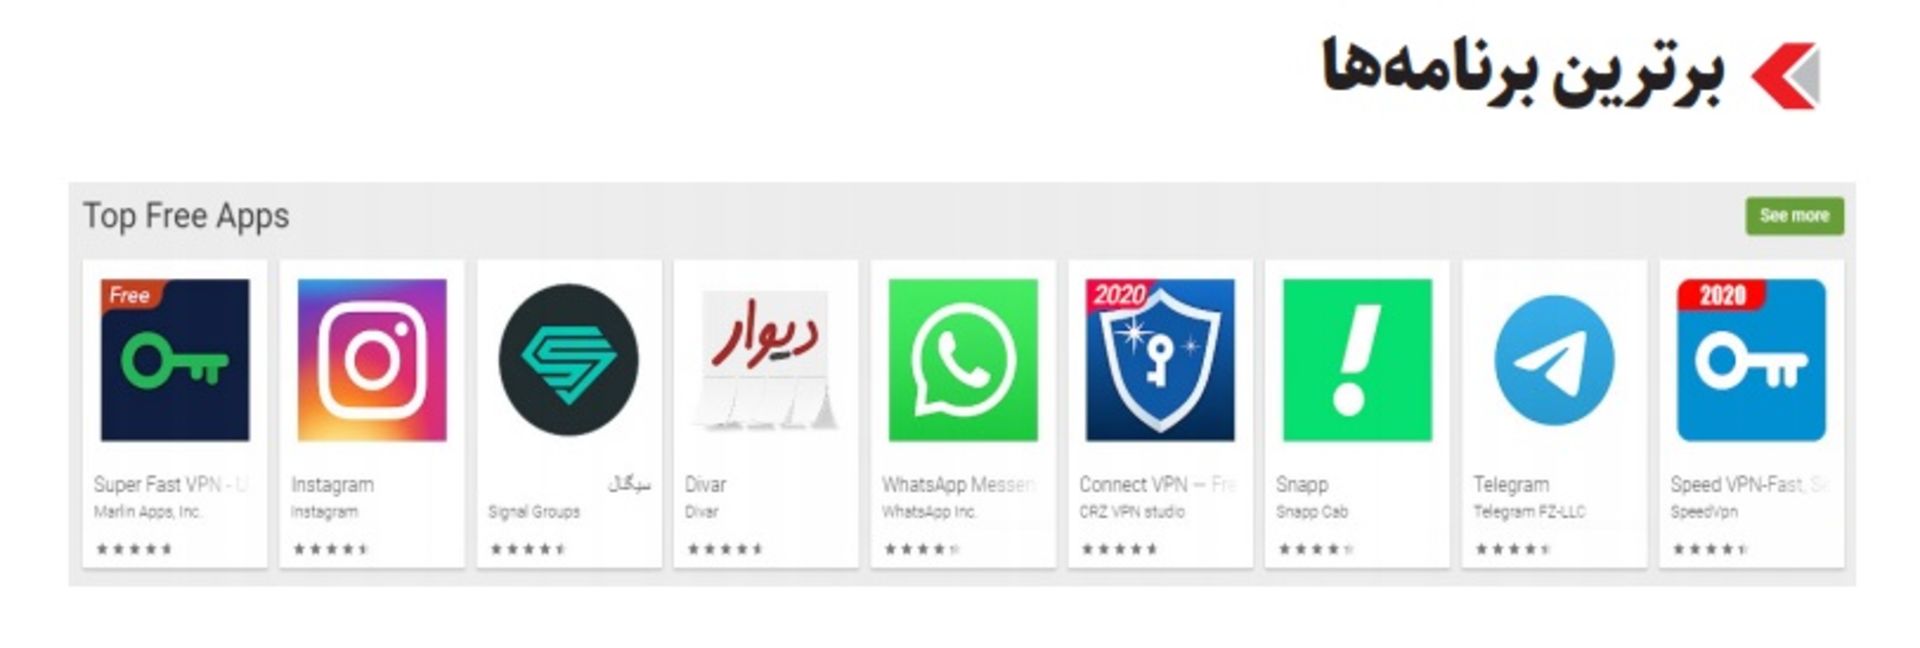 جدول برترین برنامه های دانلود شده ایرانی ها در گوگل پلی